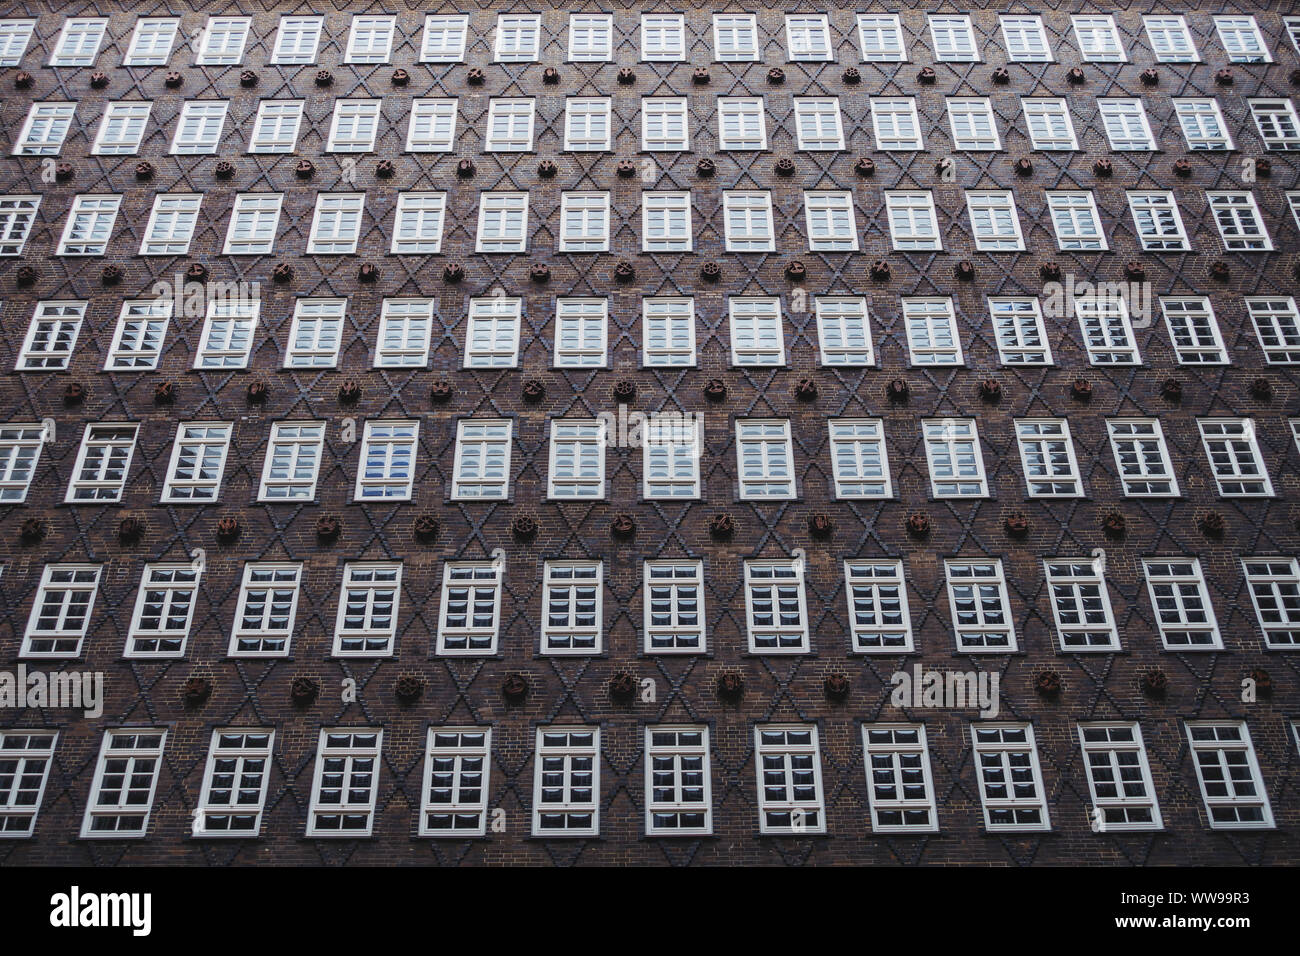 Les vastes rangées de fenêtres dans la cour de l'immeuble Sprinkenhof à Hambourg, Allemagne. Conçu par Fritz Höger et achevé en 1943 Banque D'Images